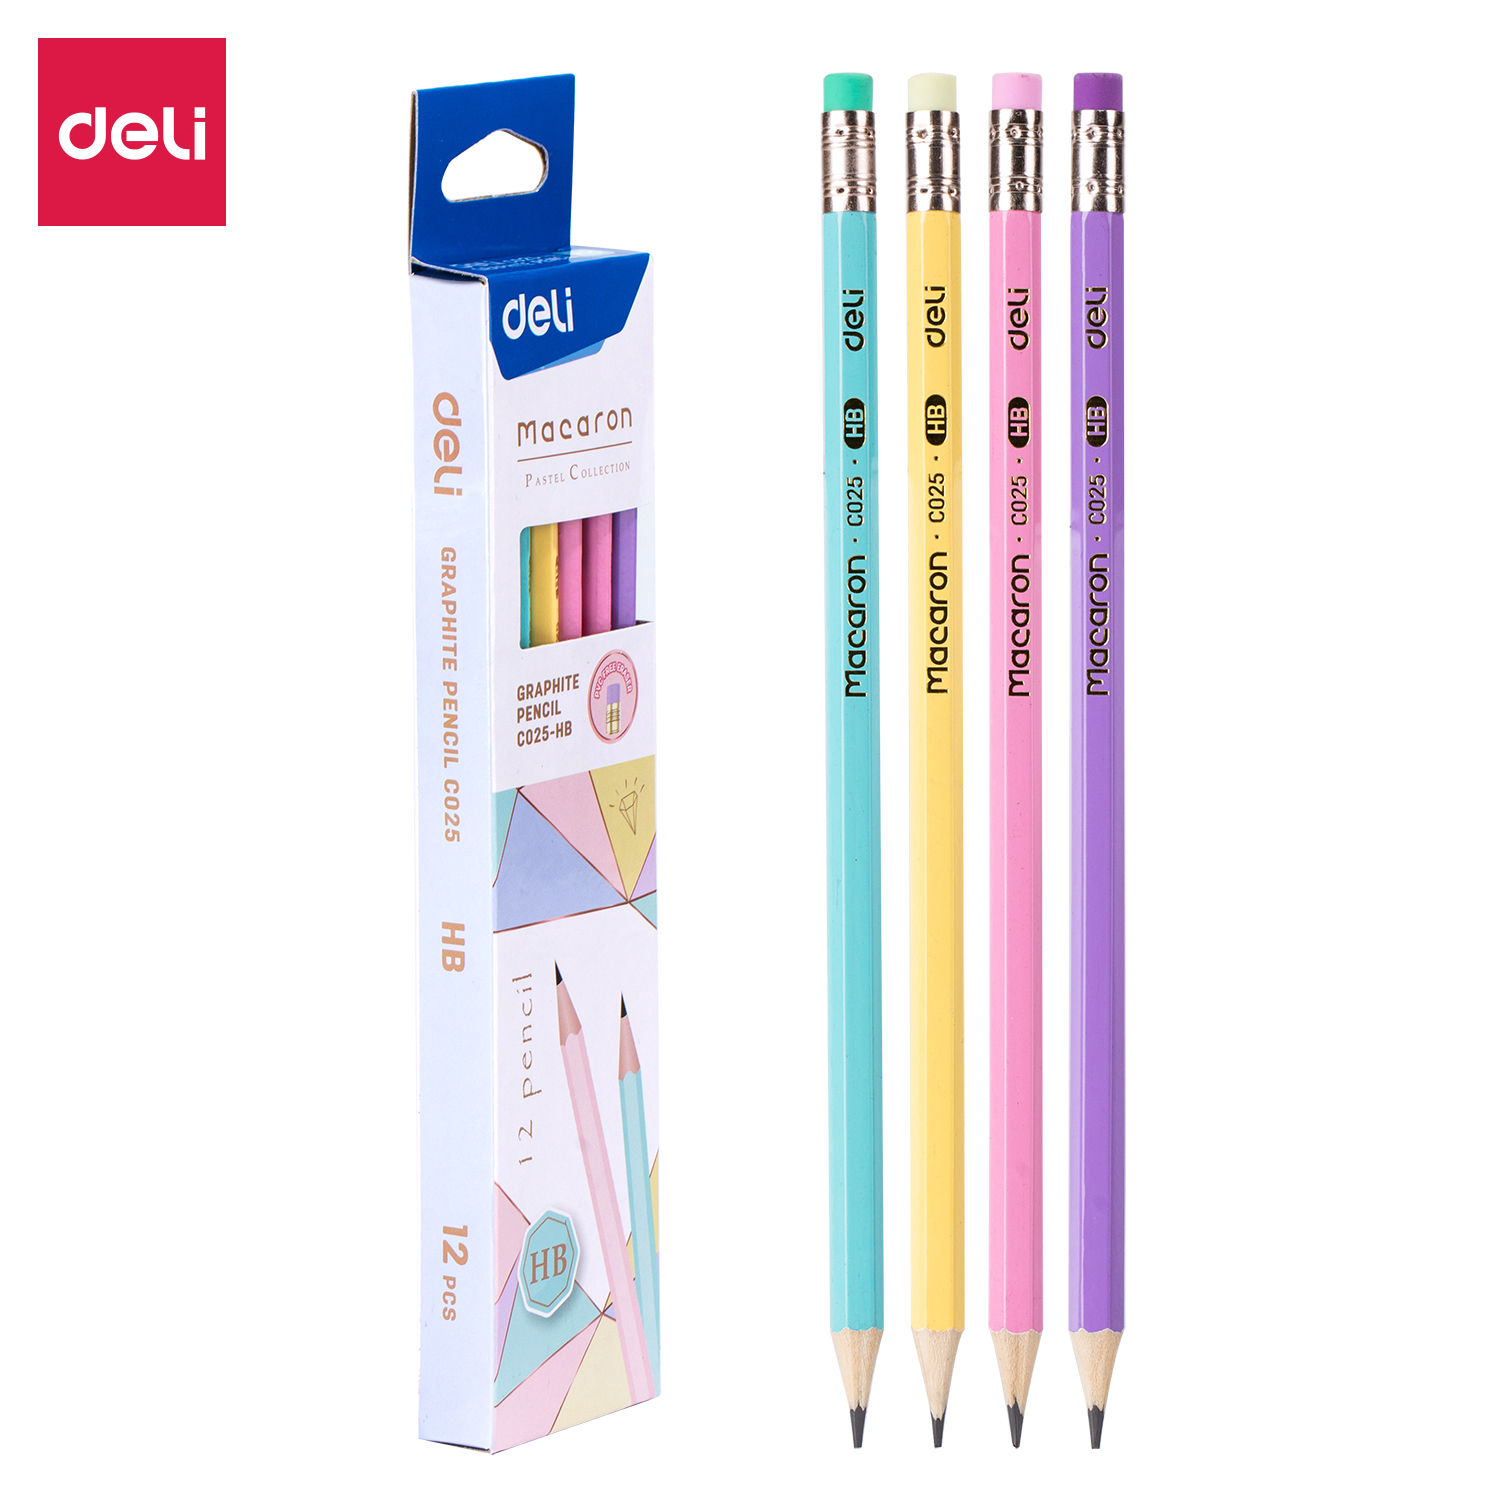 Deli-EC025-HB Graphite pencil